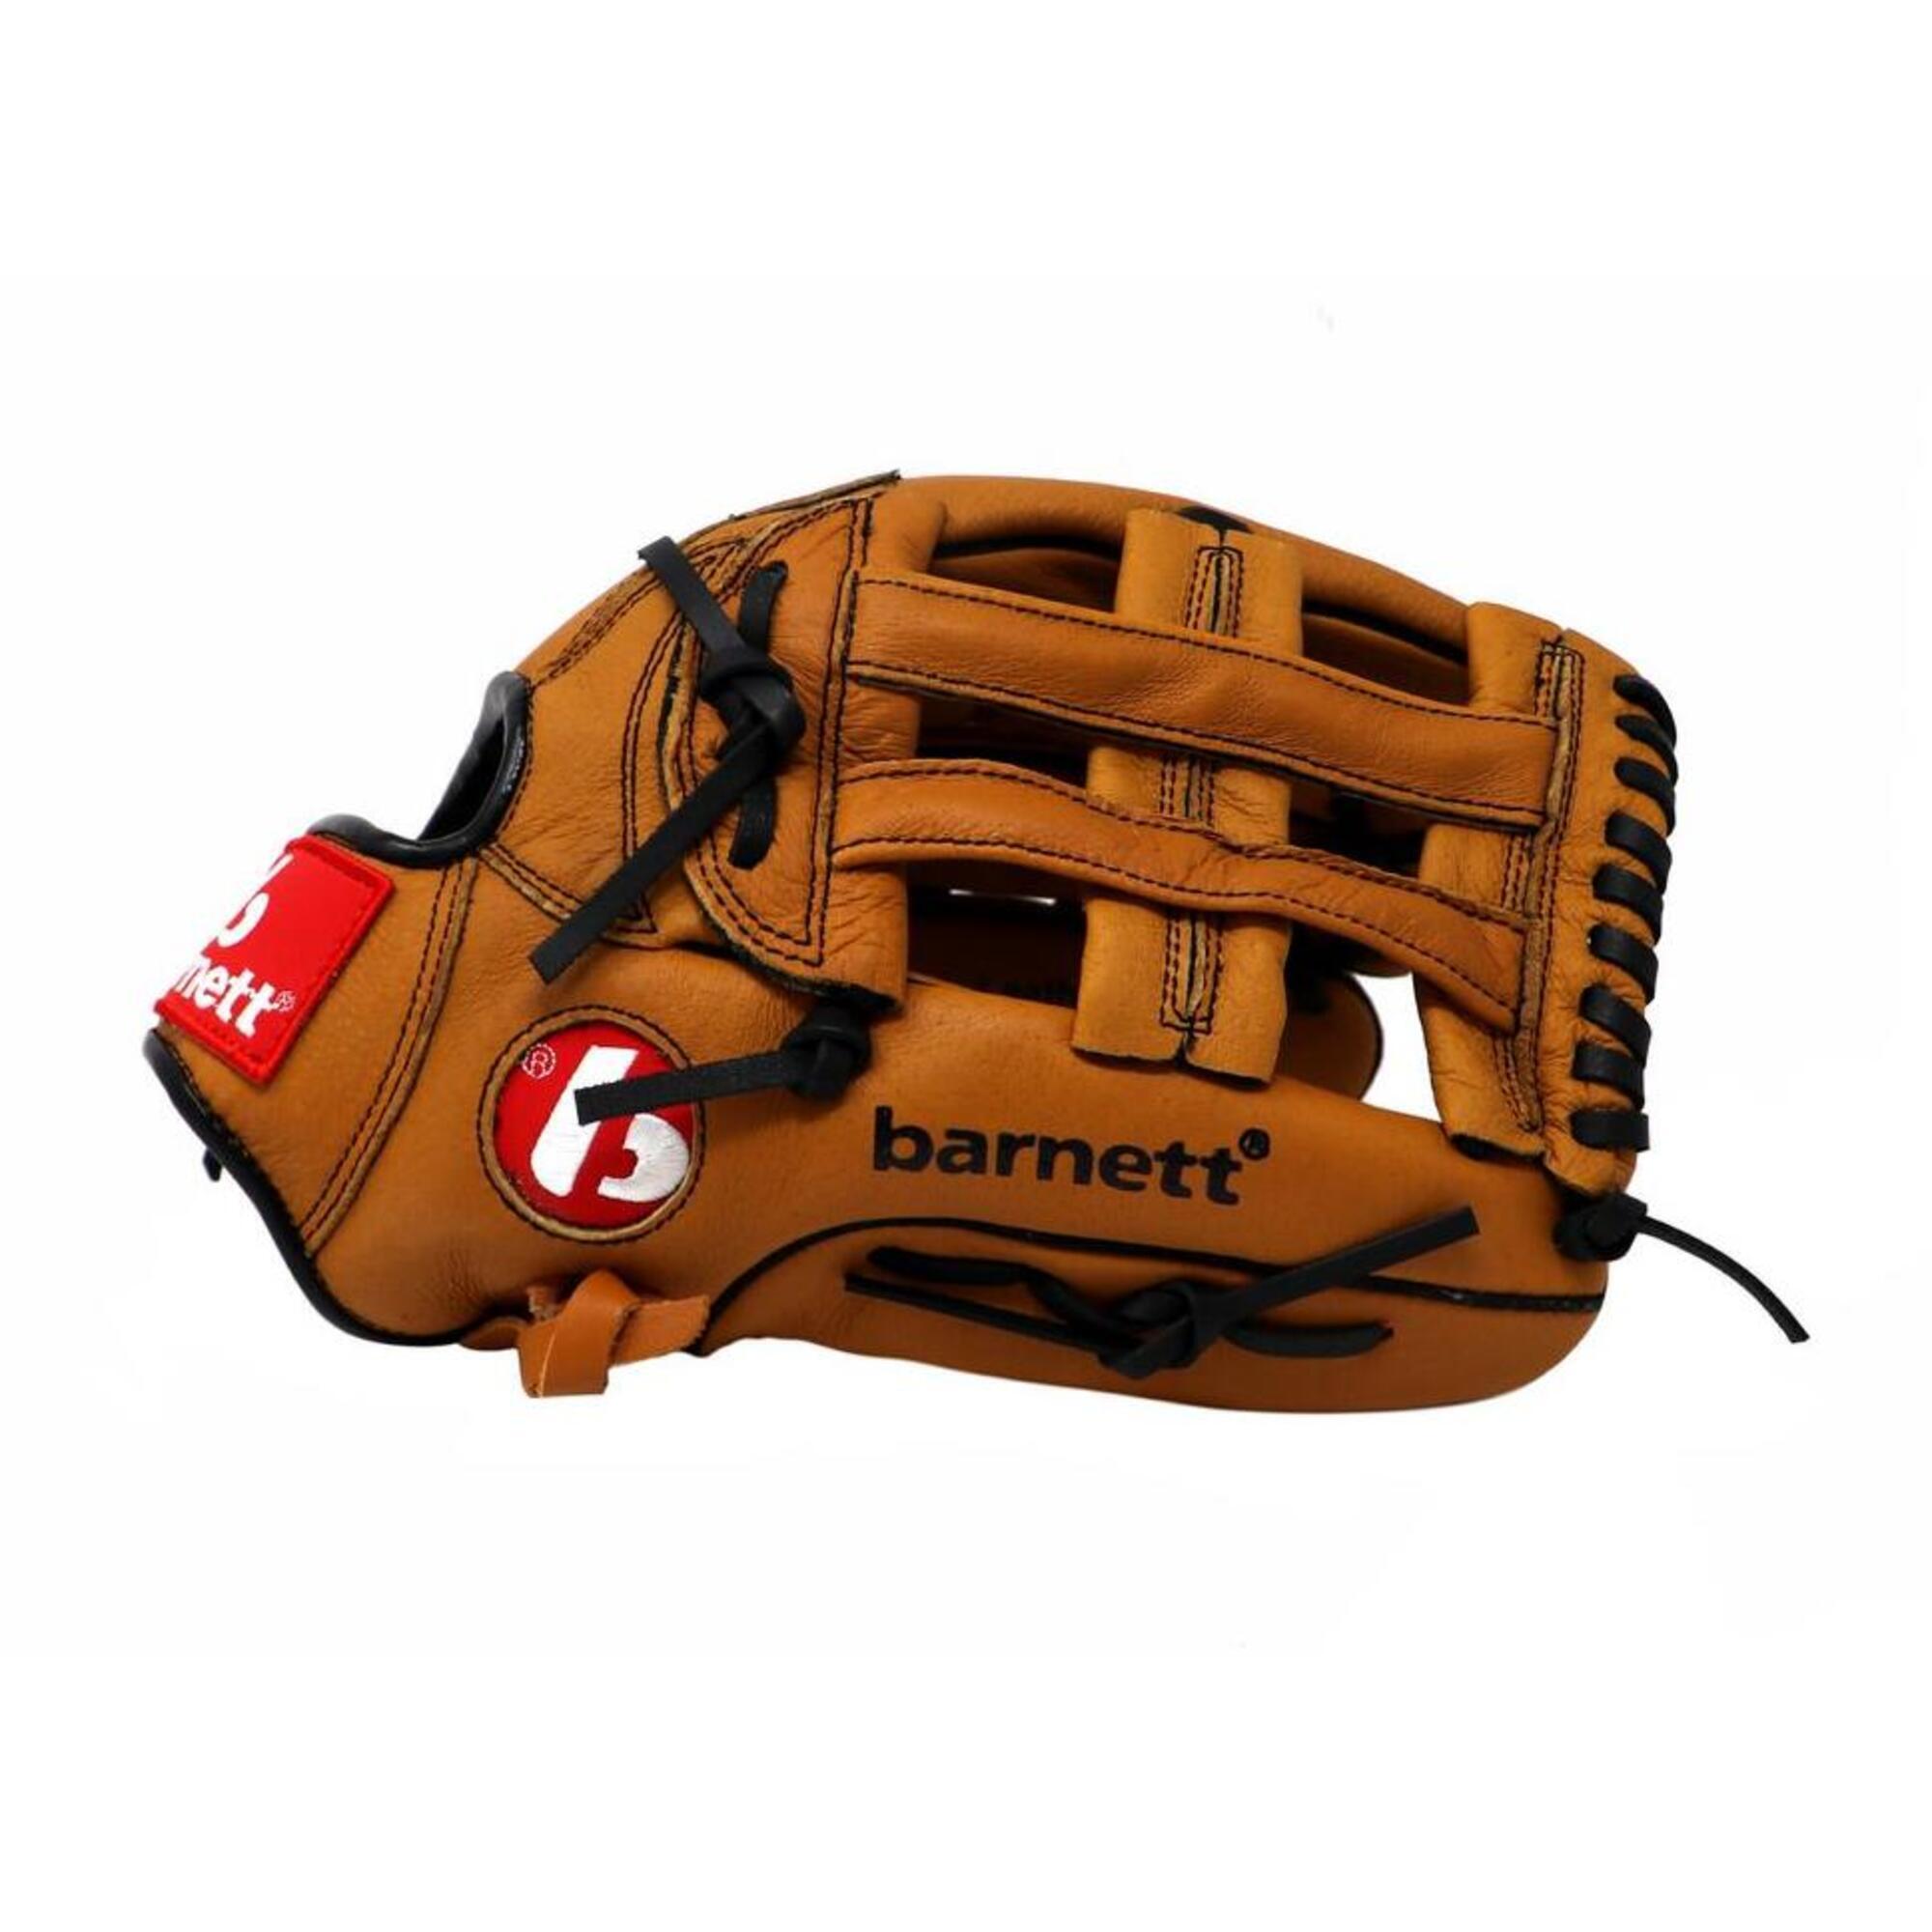 BARNETT  leather baseball glove REG SL-127